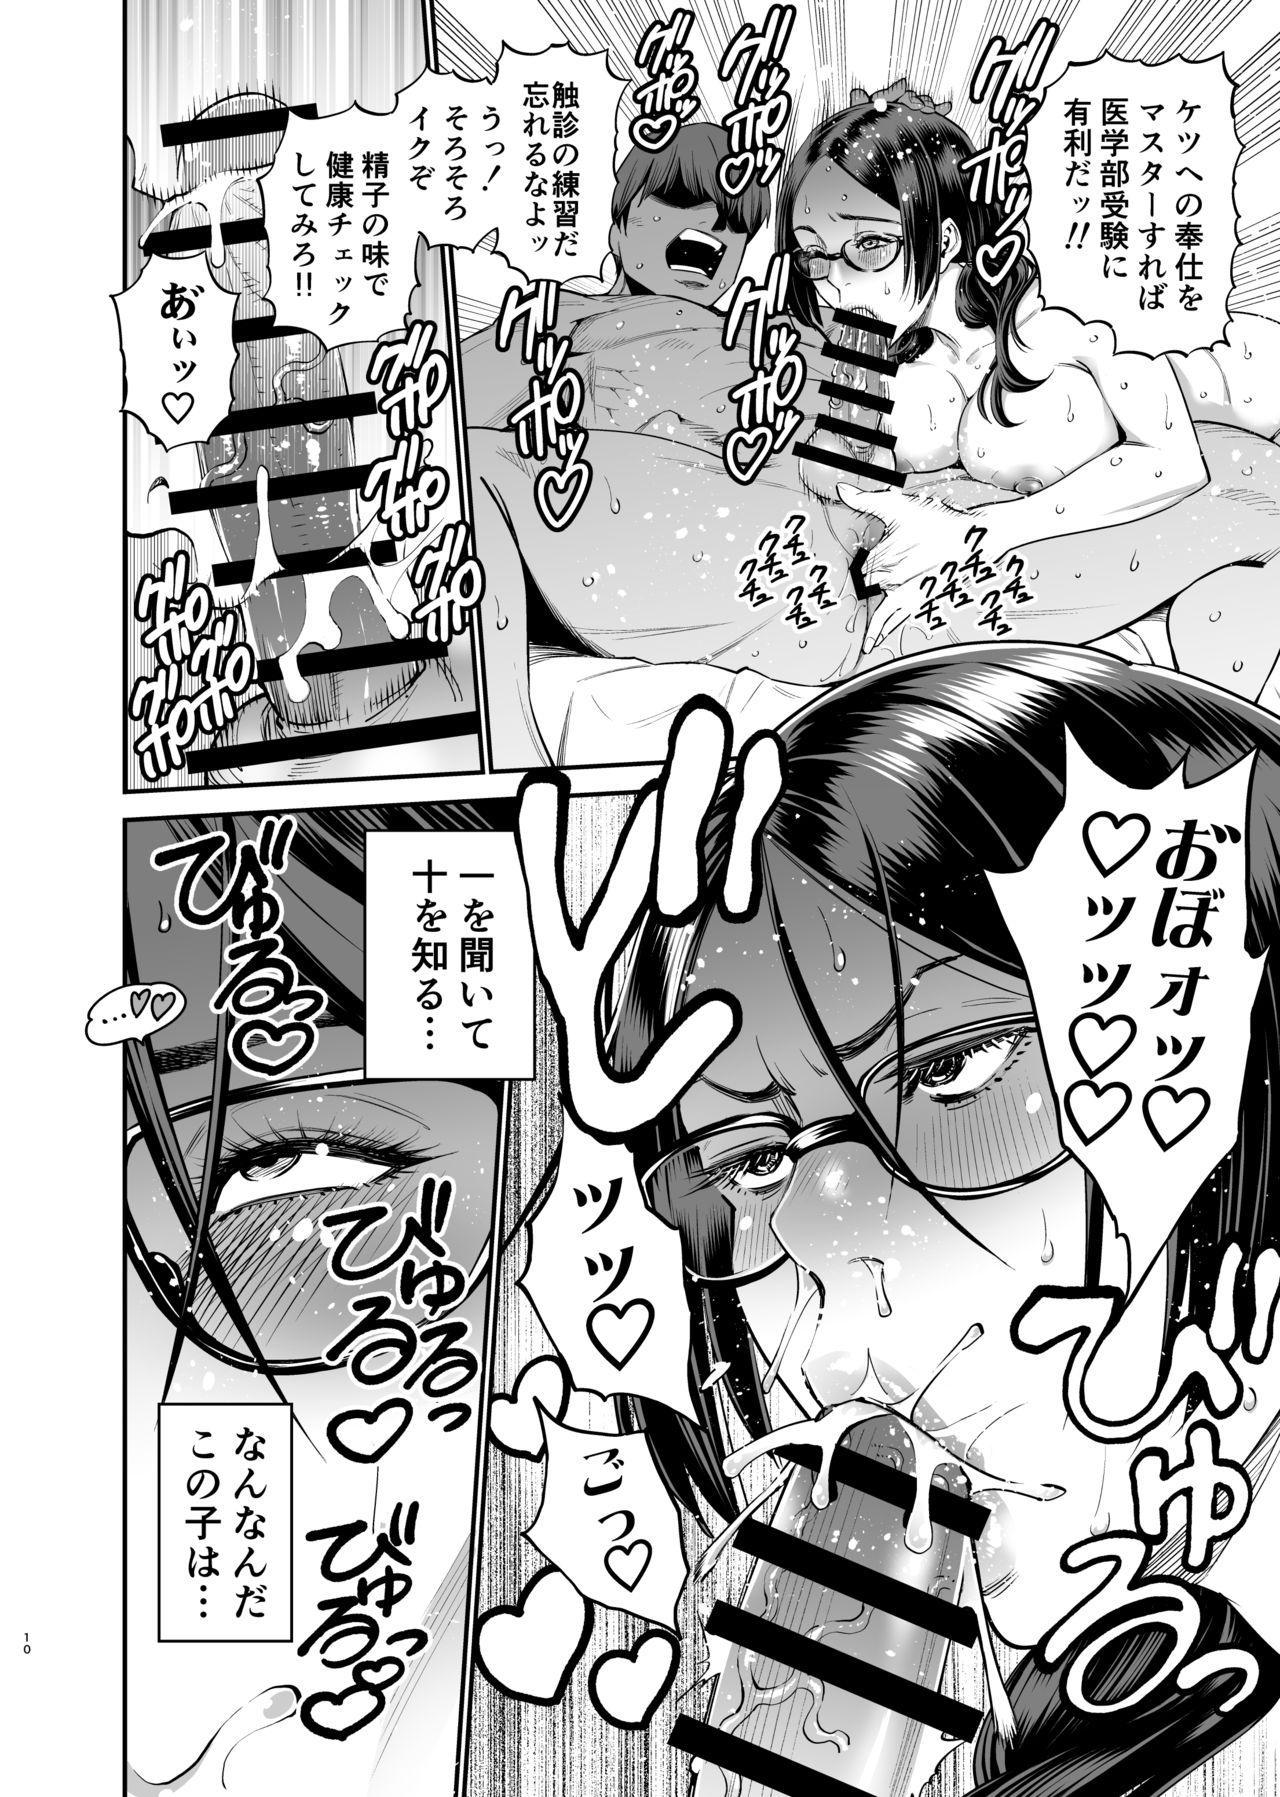 Bj Iiyama Koharu wa Nandemo Dekiru - Original Ano - Page 10